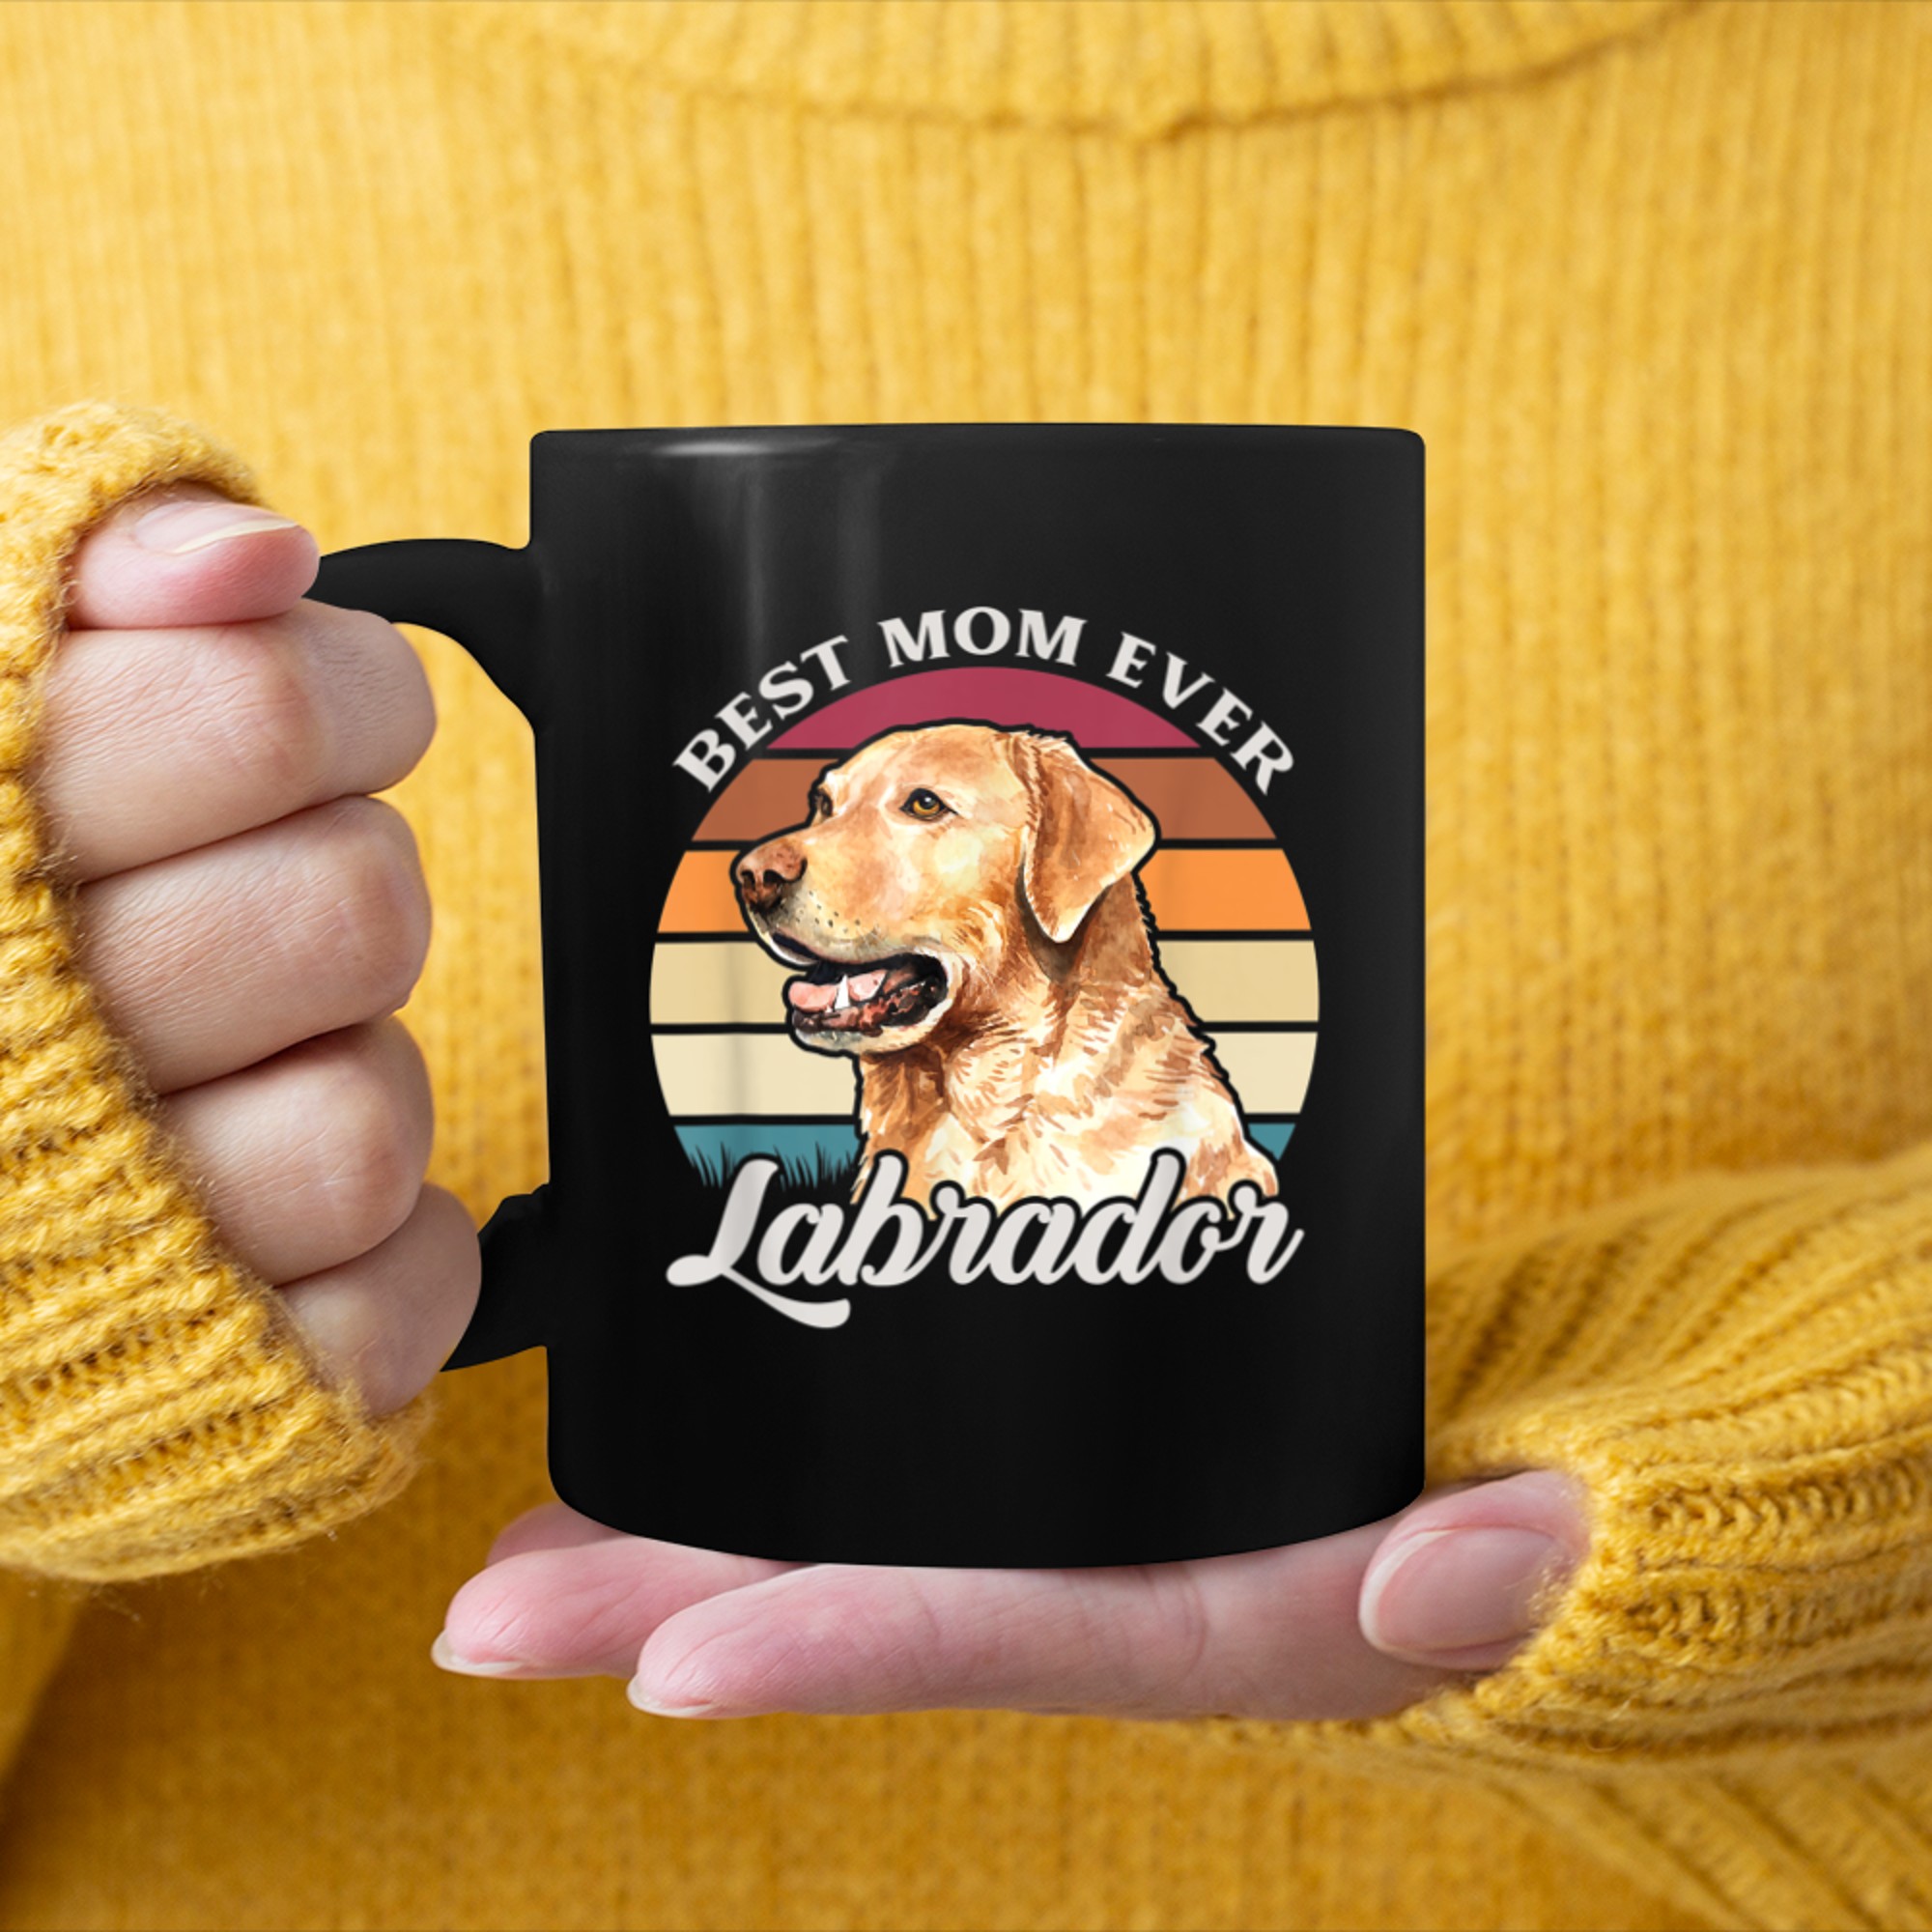 Best Mom Ever Labrador Dog Owner Gift mug black